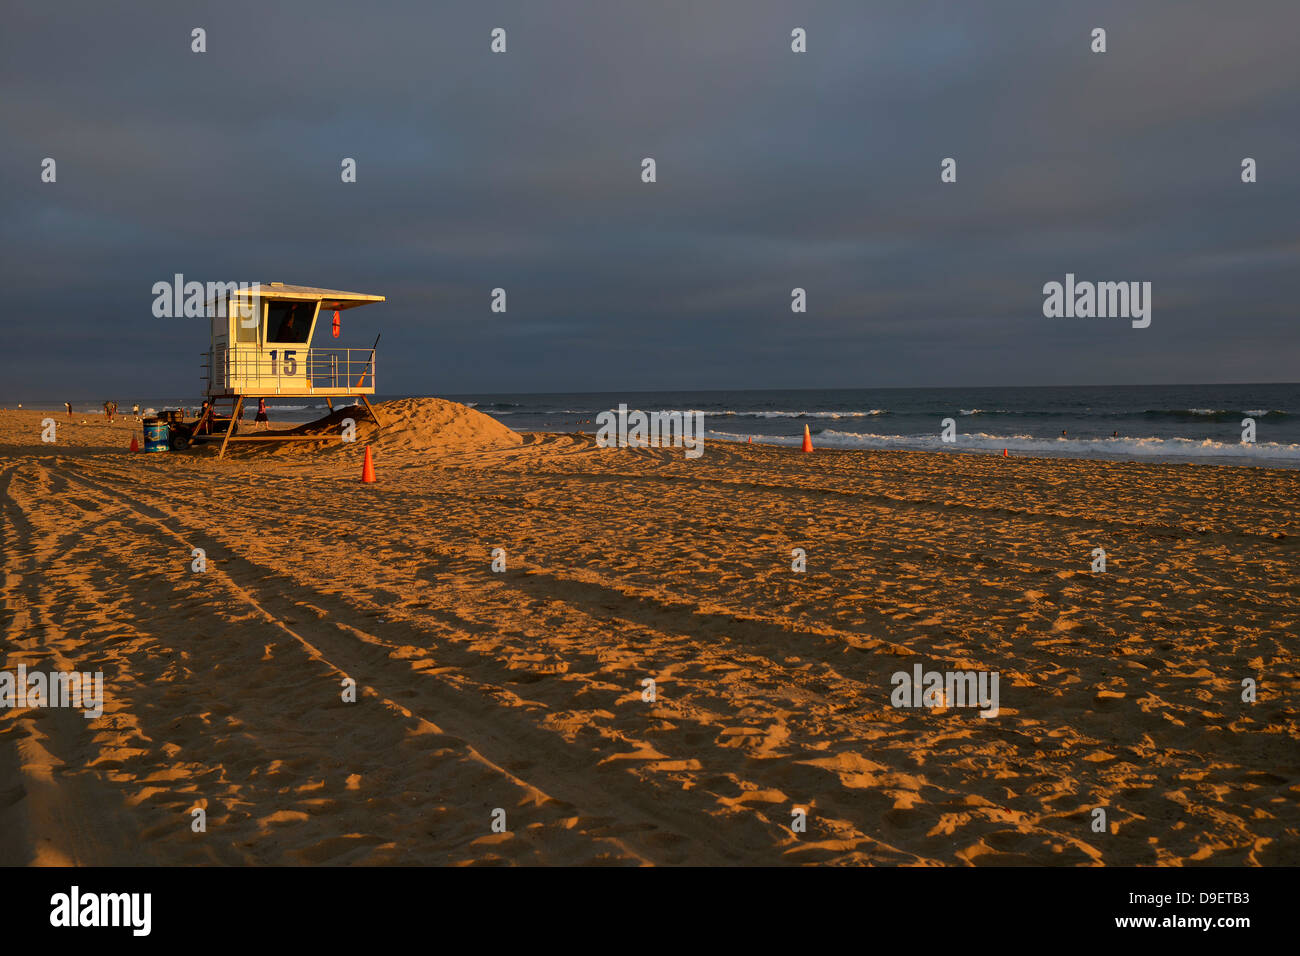 De l'eau cabine de sauvetage Baywatch, coucher du soleil, de la plage Huntington Beach, Californie, États-Unis d'Amérique, USA Banque D'Images